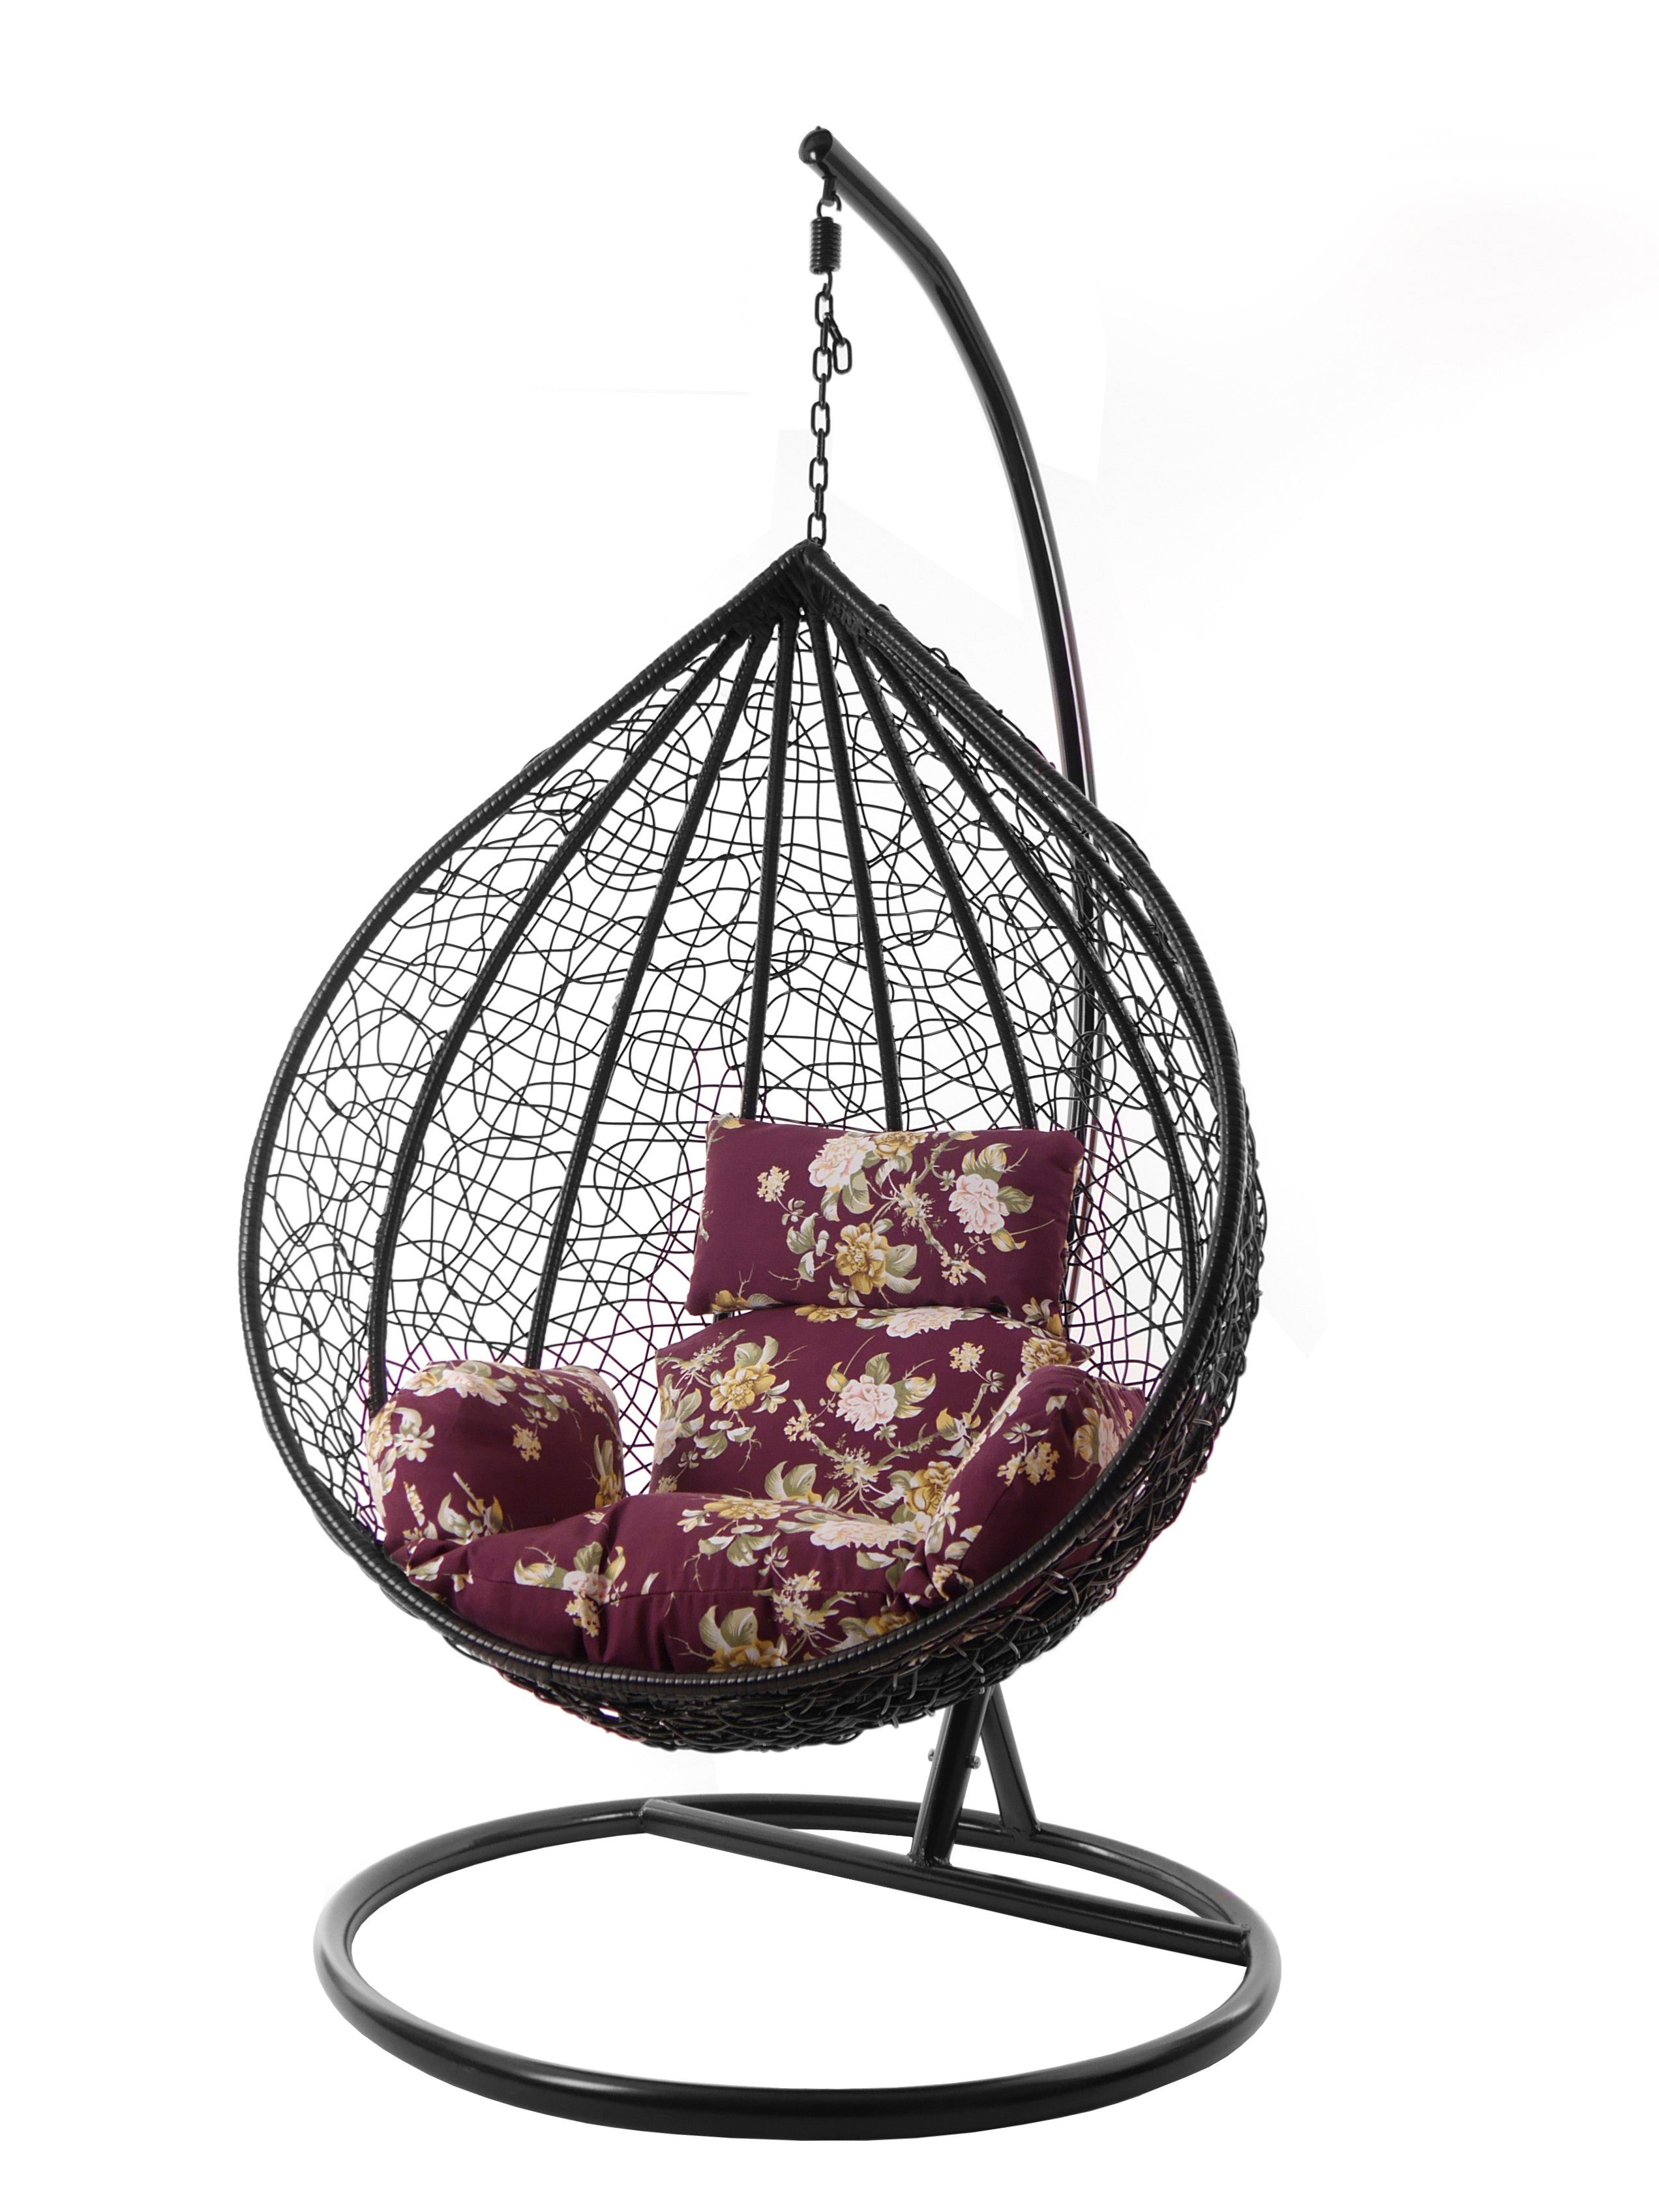 KIDEO Hängesessel Hängesessel MANACOR schwarz, Chair, gemustert Kissen, mit Gestell vino Swing (3905 tinto) Nest-Kissen XXL und Hängesessel